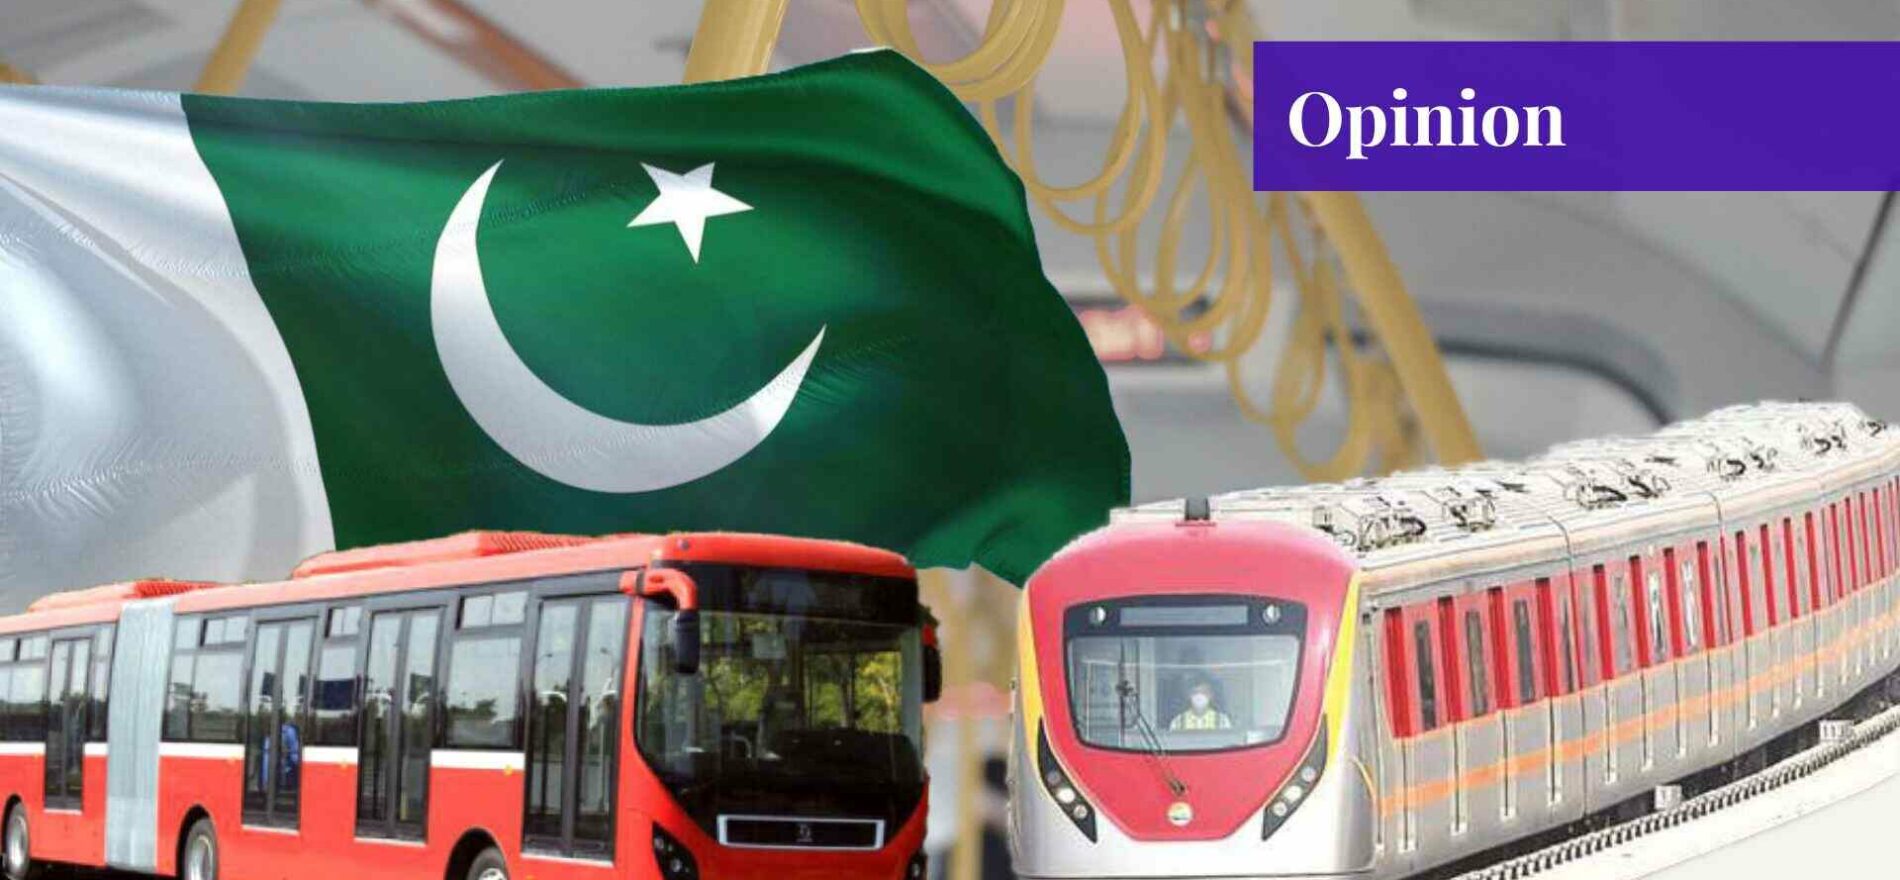 public transport in pakistan